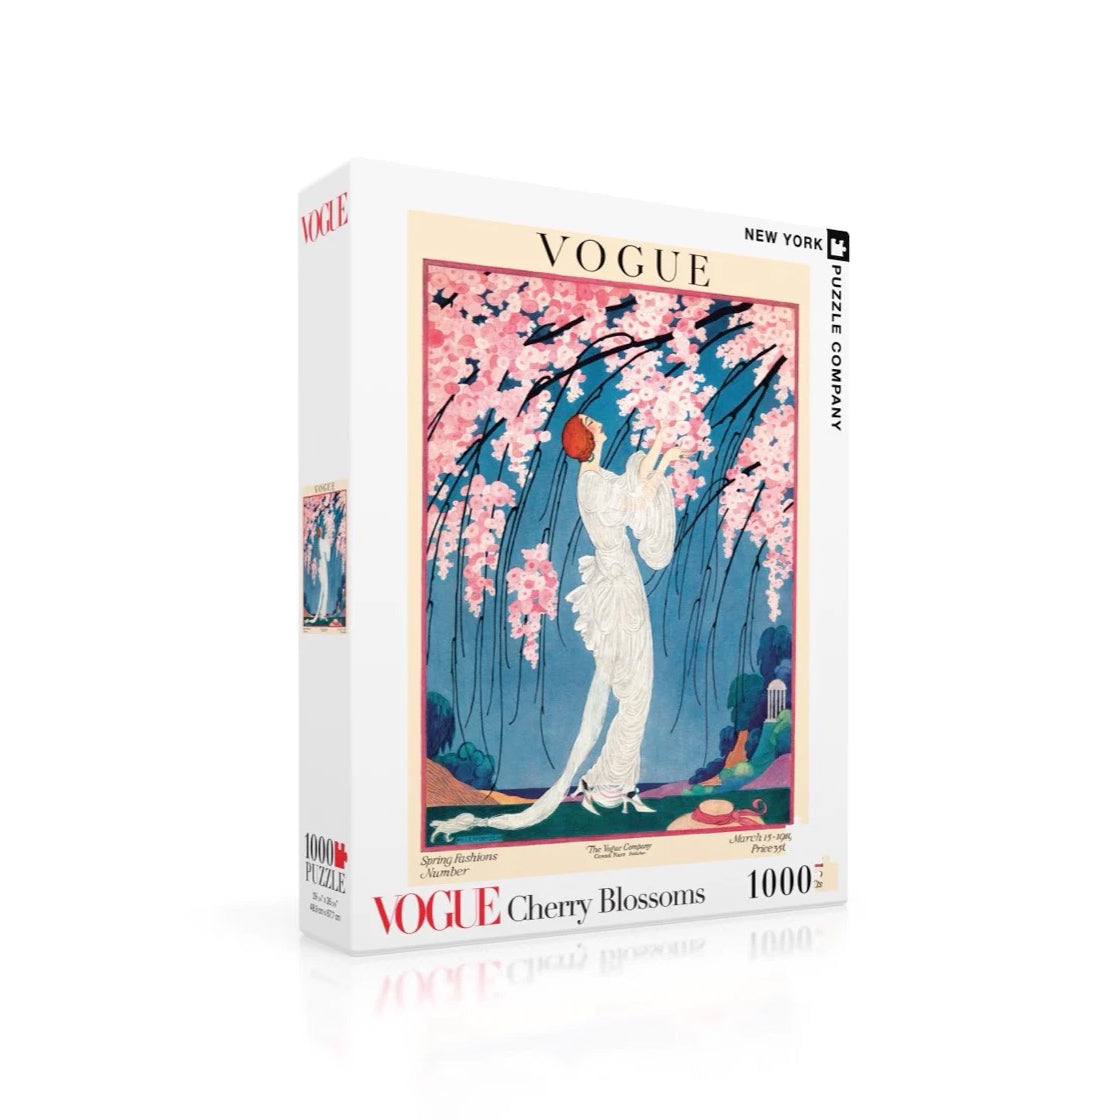 Puzzel Vogue│Cherry Blossoms 1000 stukjes│New York Puzzle Company│art. NPZVG1706│verpakking met schaduw